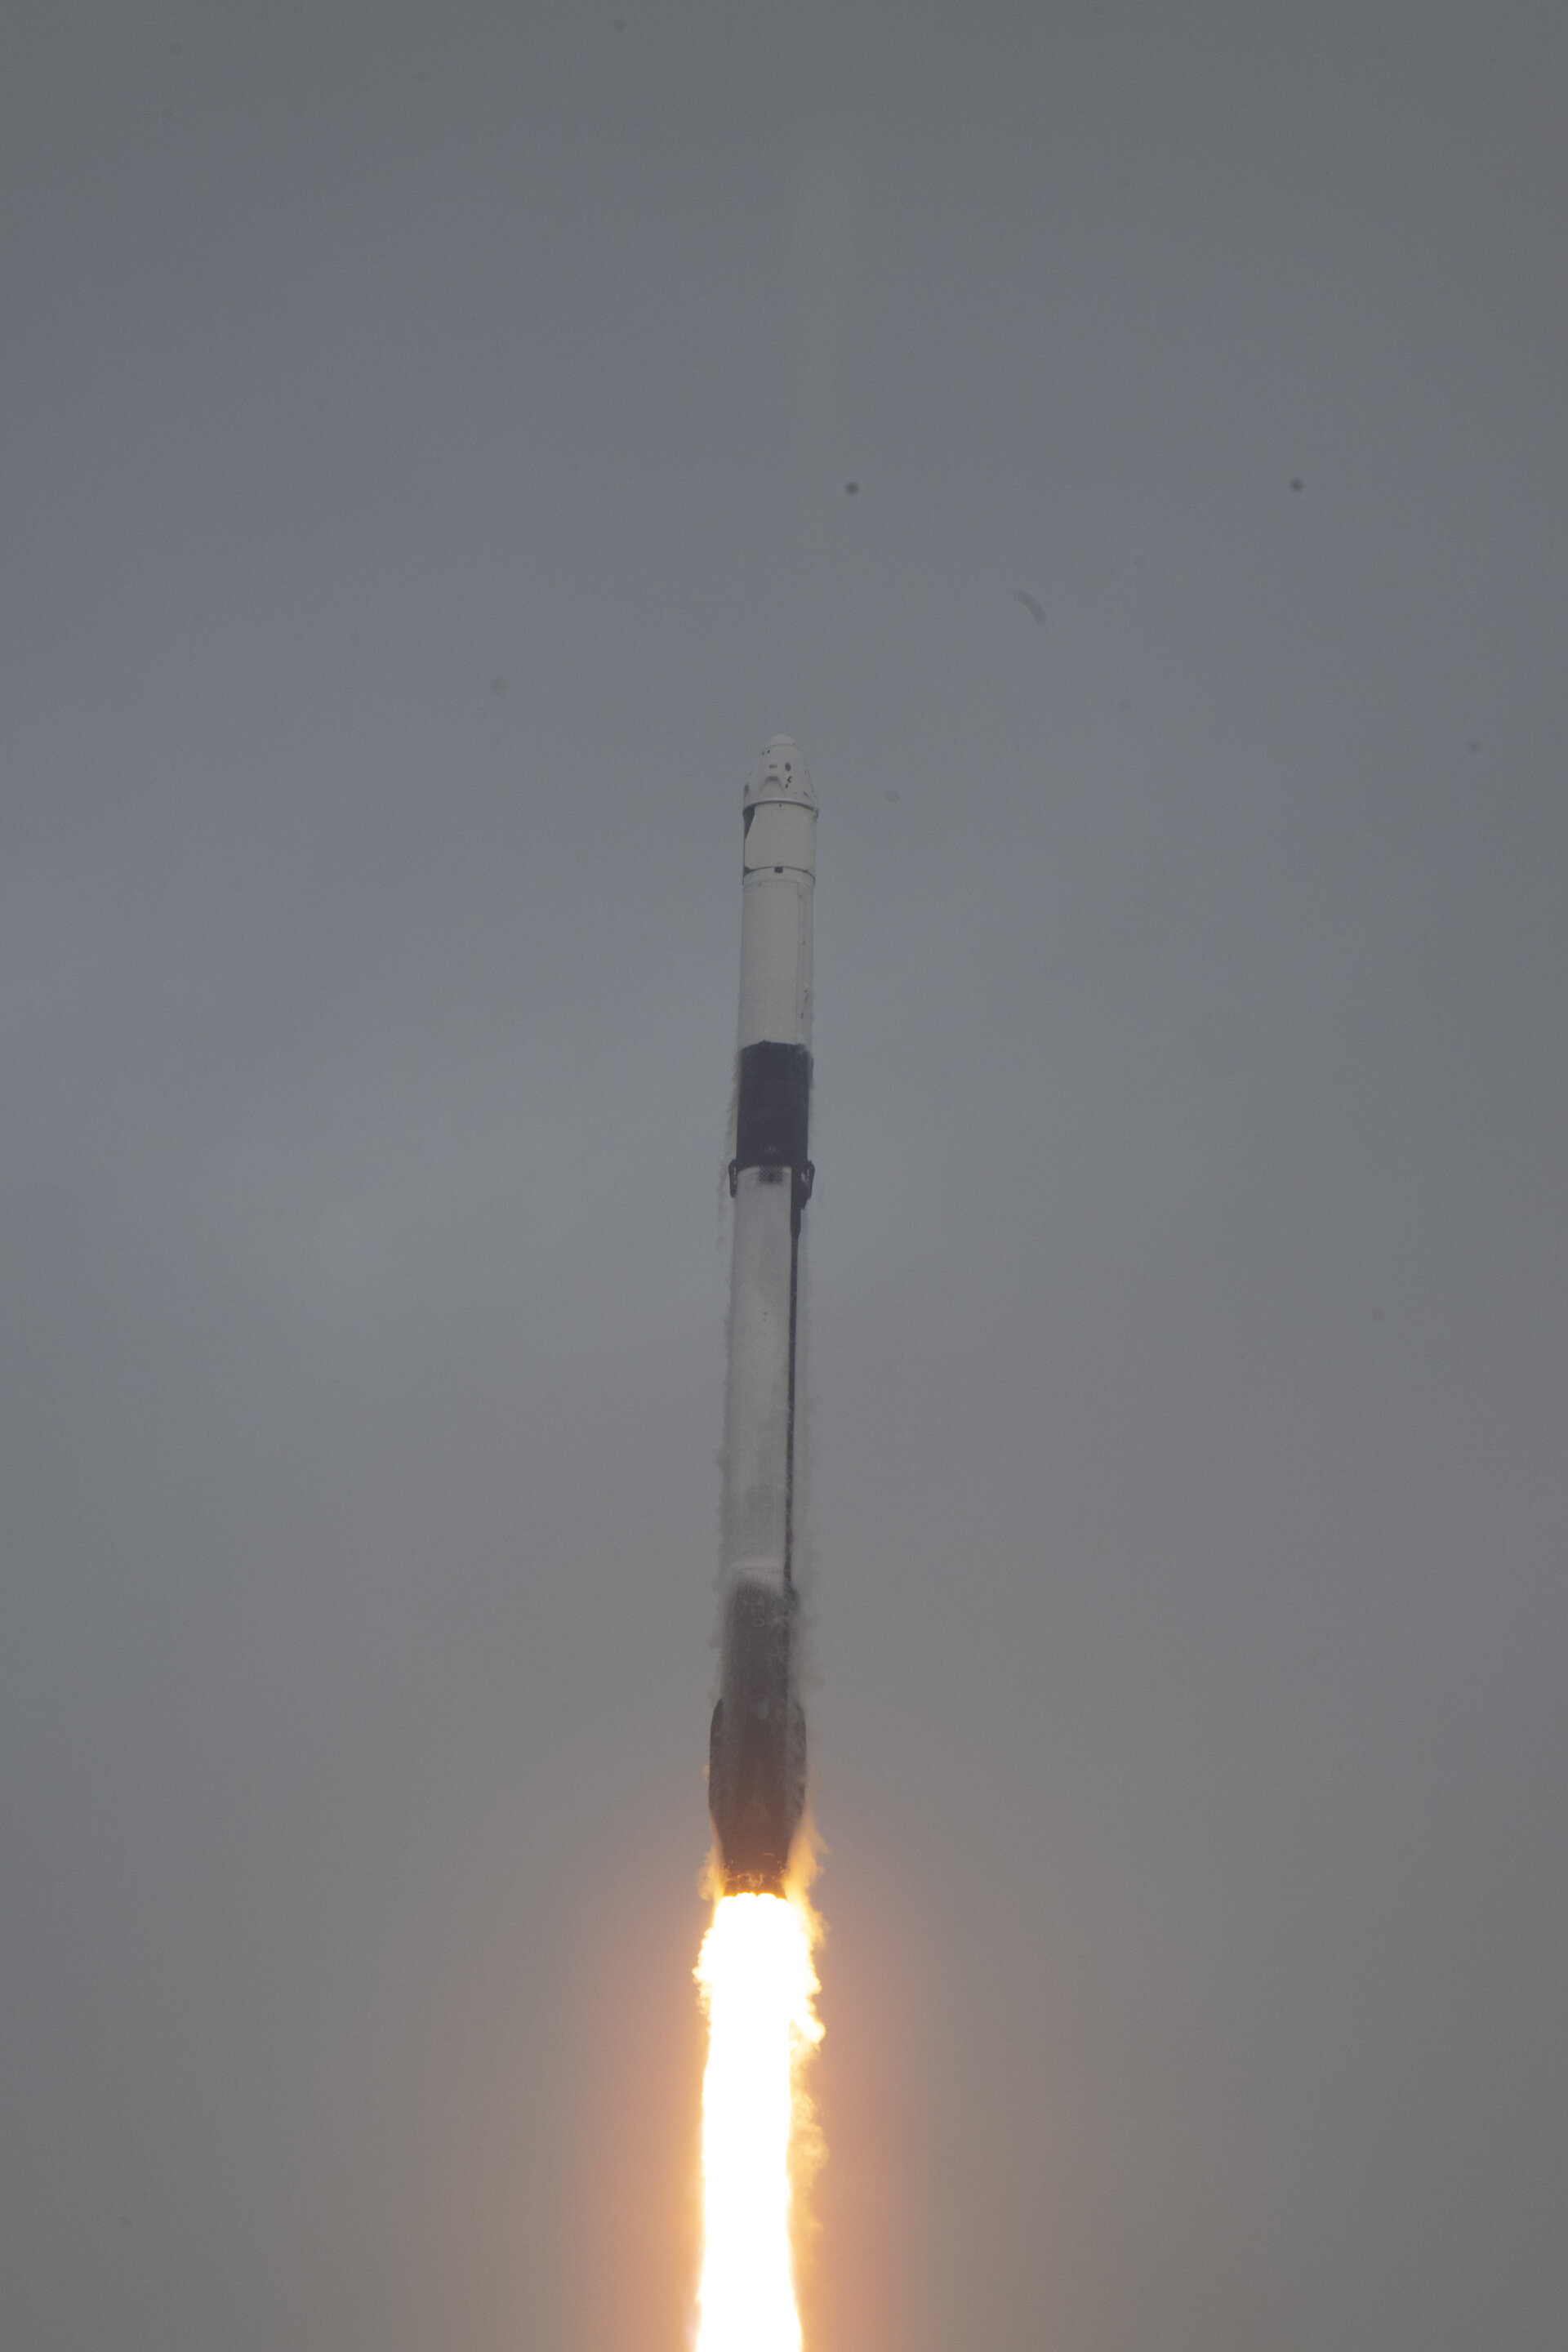 Liftoff of Axiom Mission 3